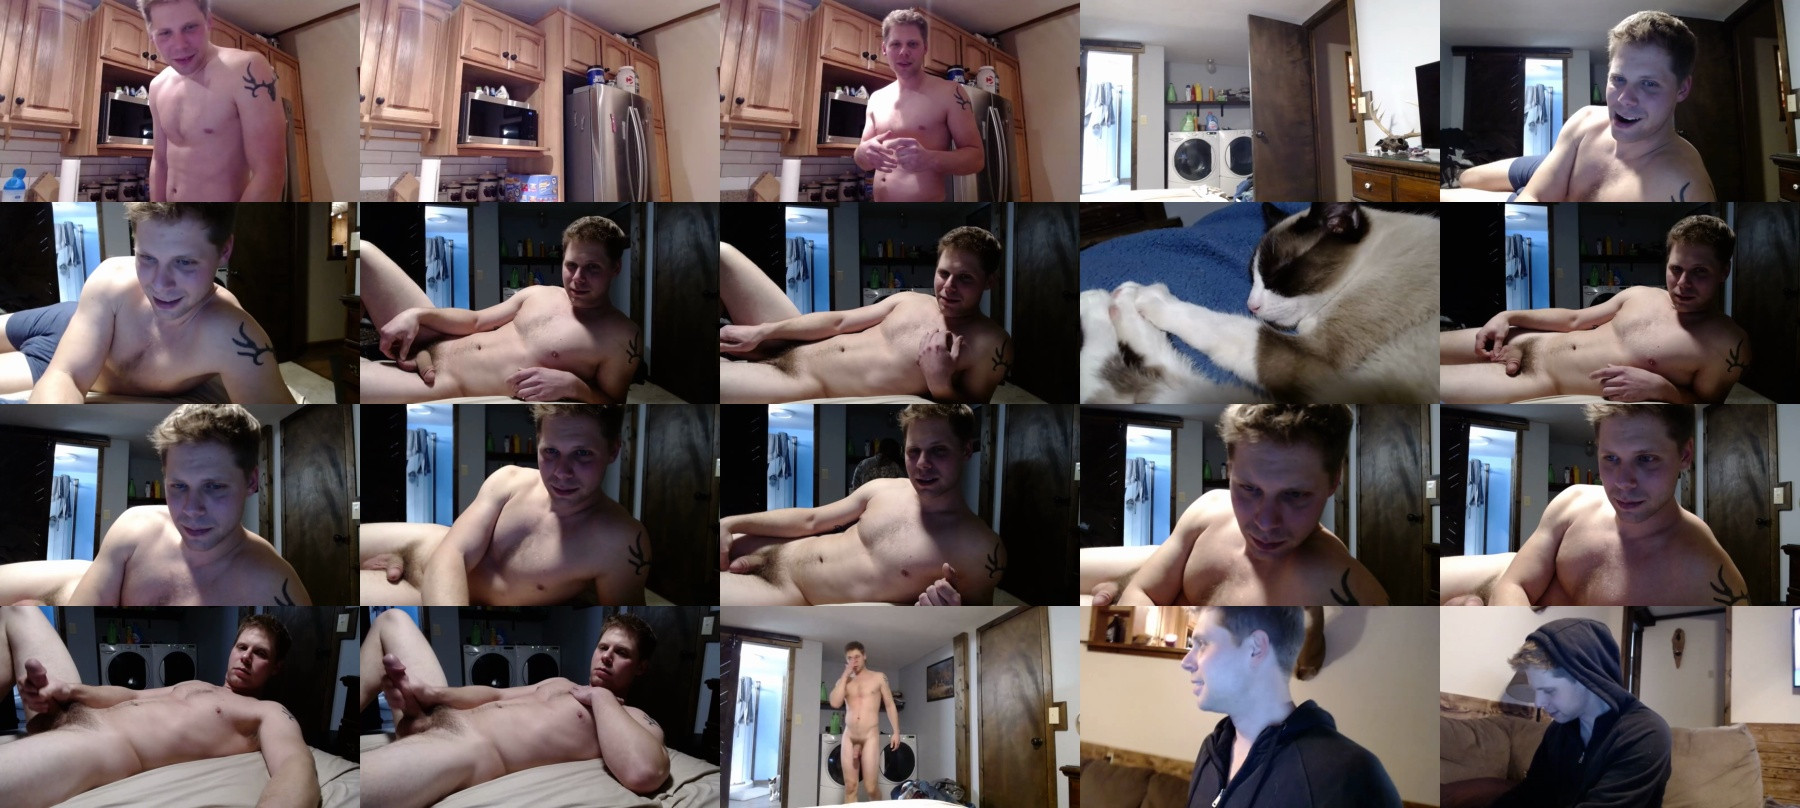 Lancehardin  15-03-2021 Male Webcam